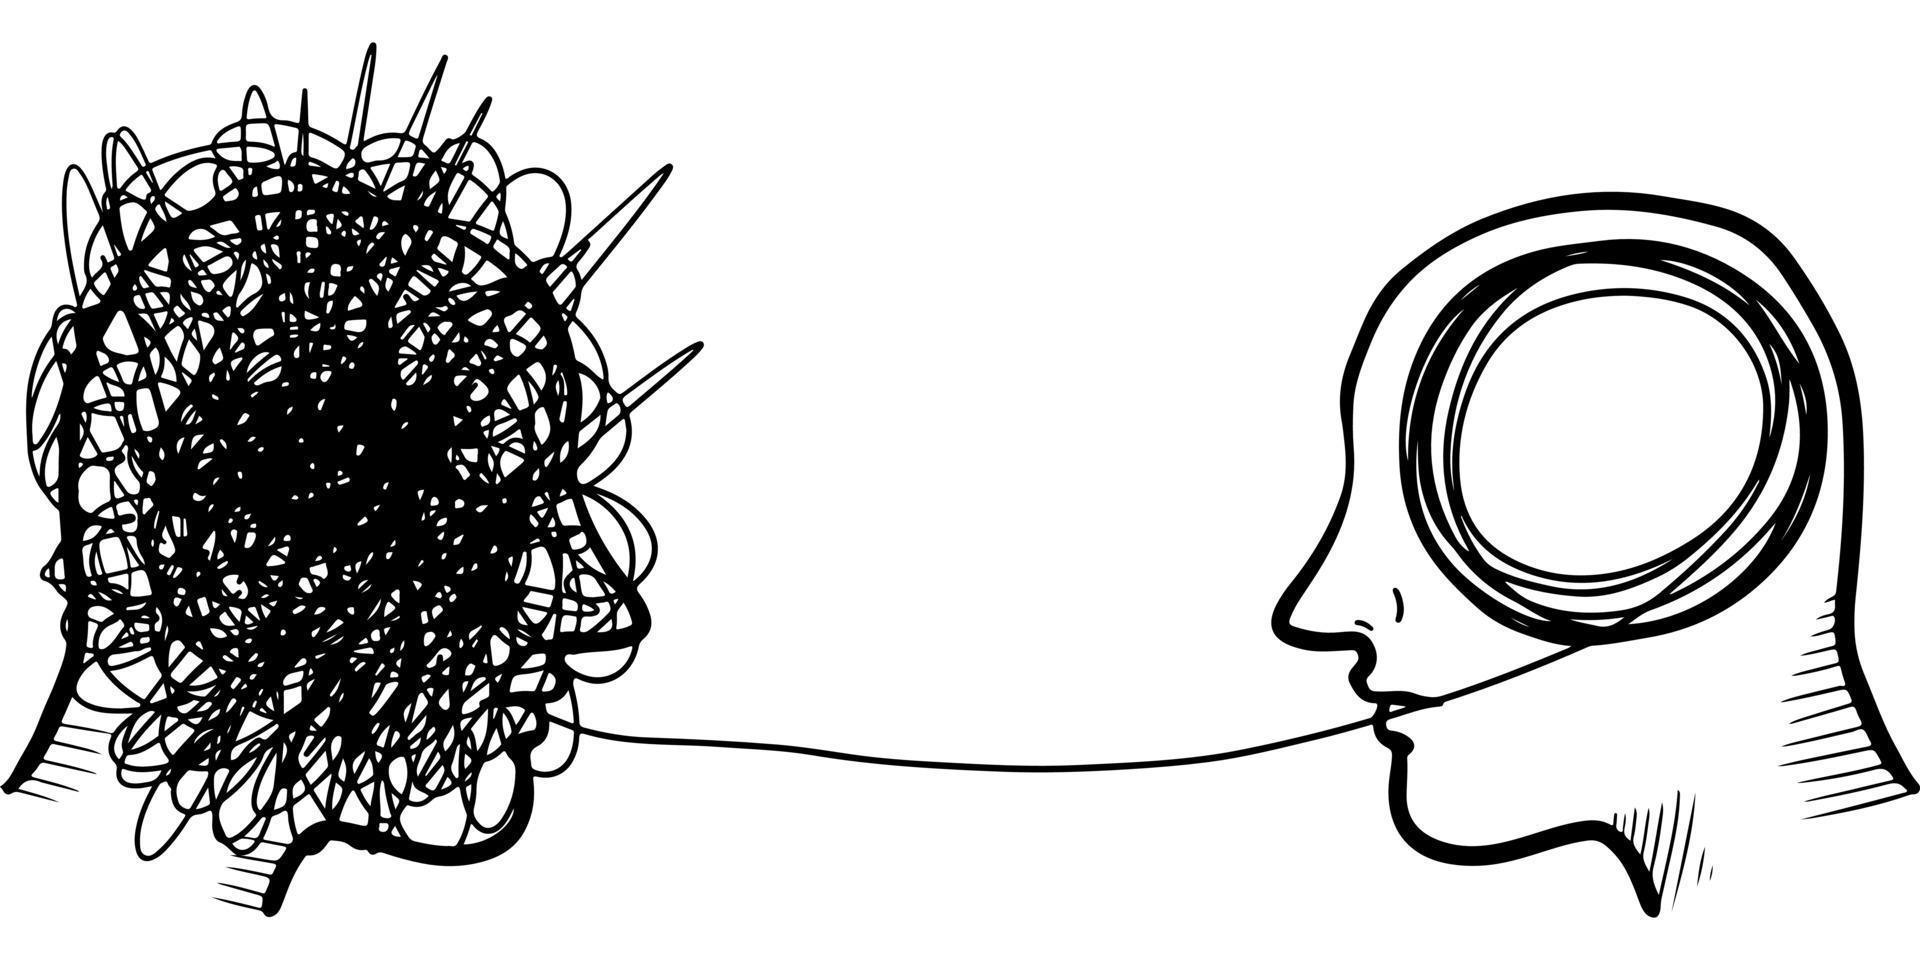 concetto di psicoterapia della siluetta della testa di due umani disegnati a mano. elemento di design. illustrazione vettoriale. vettore